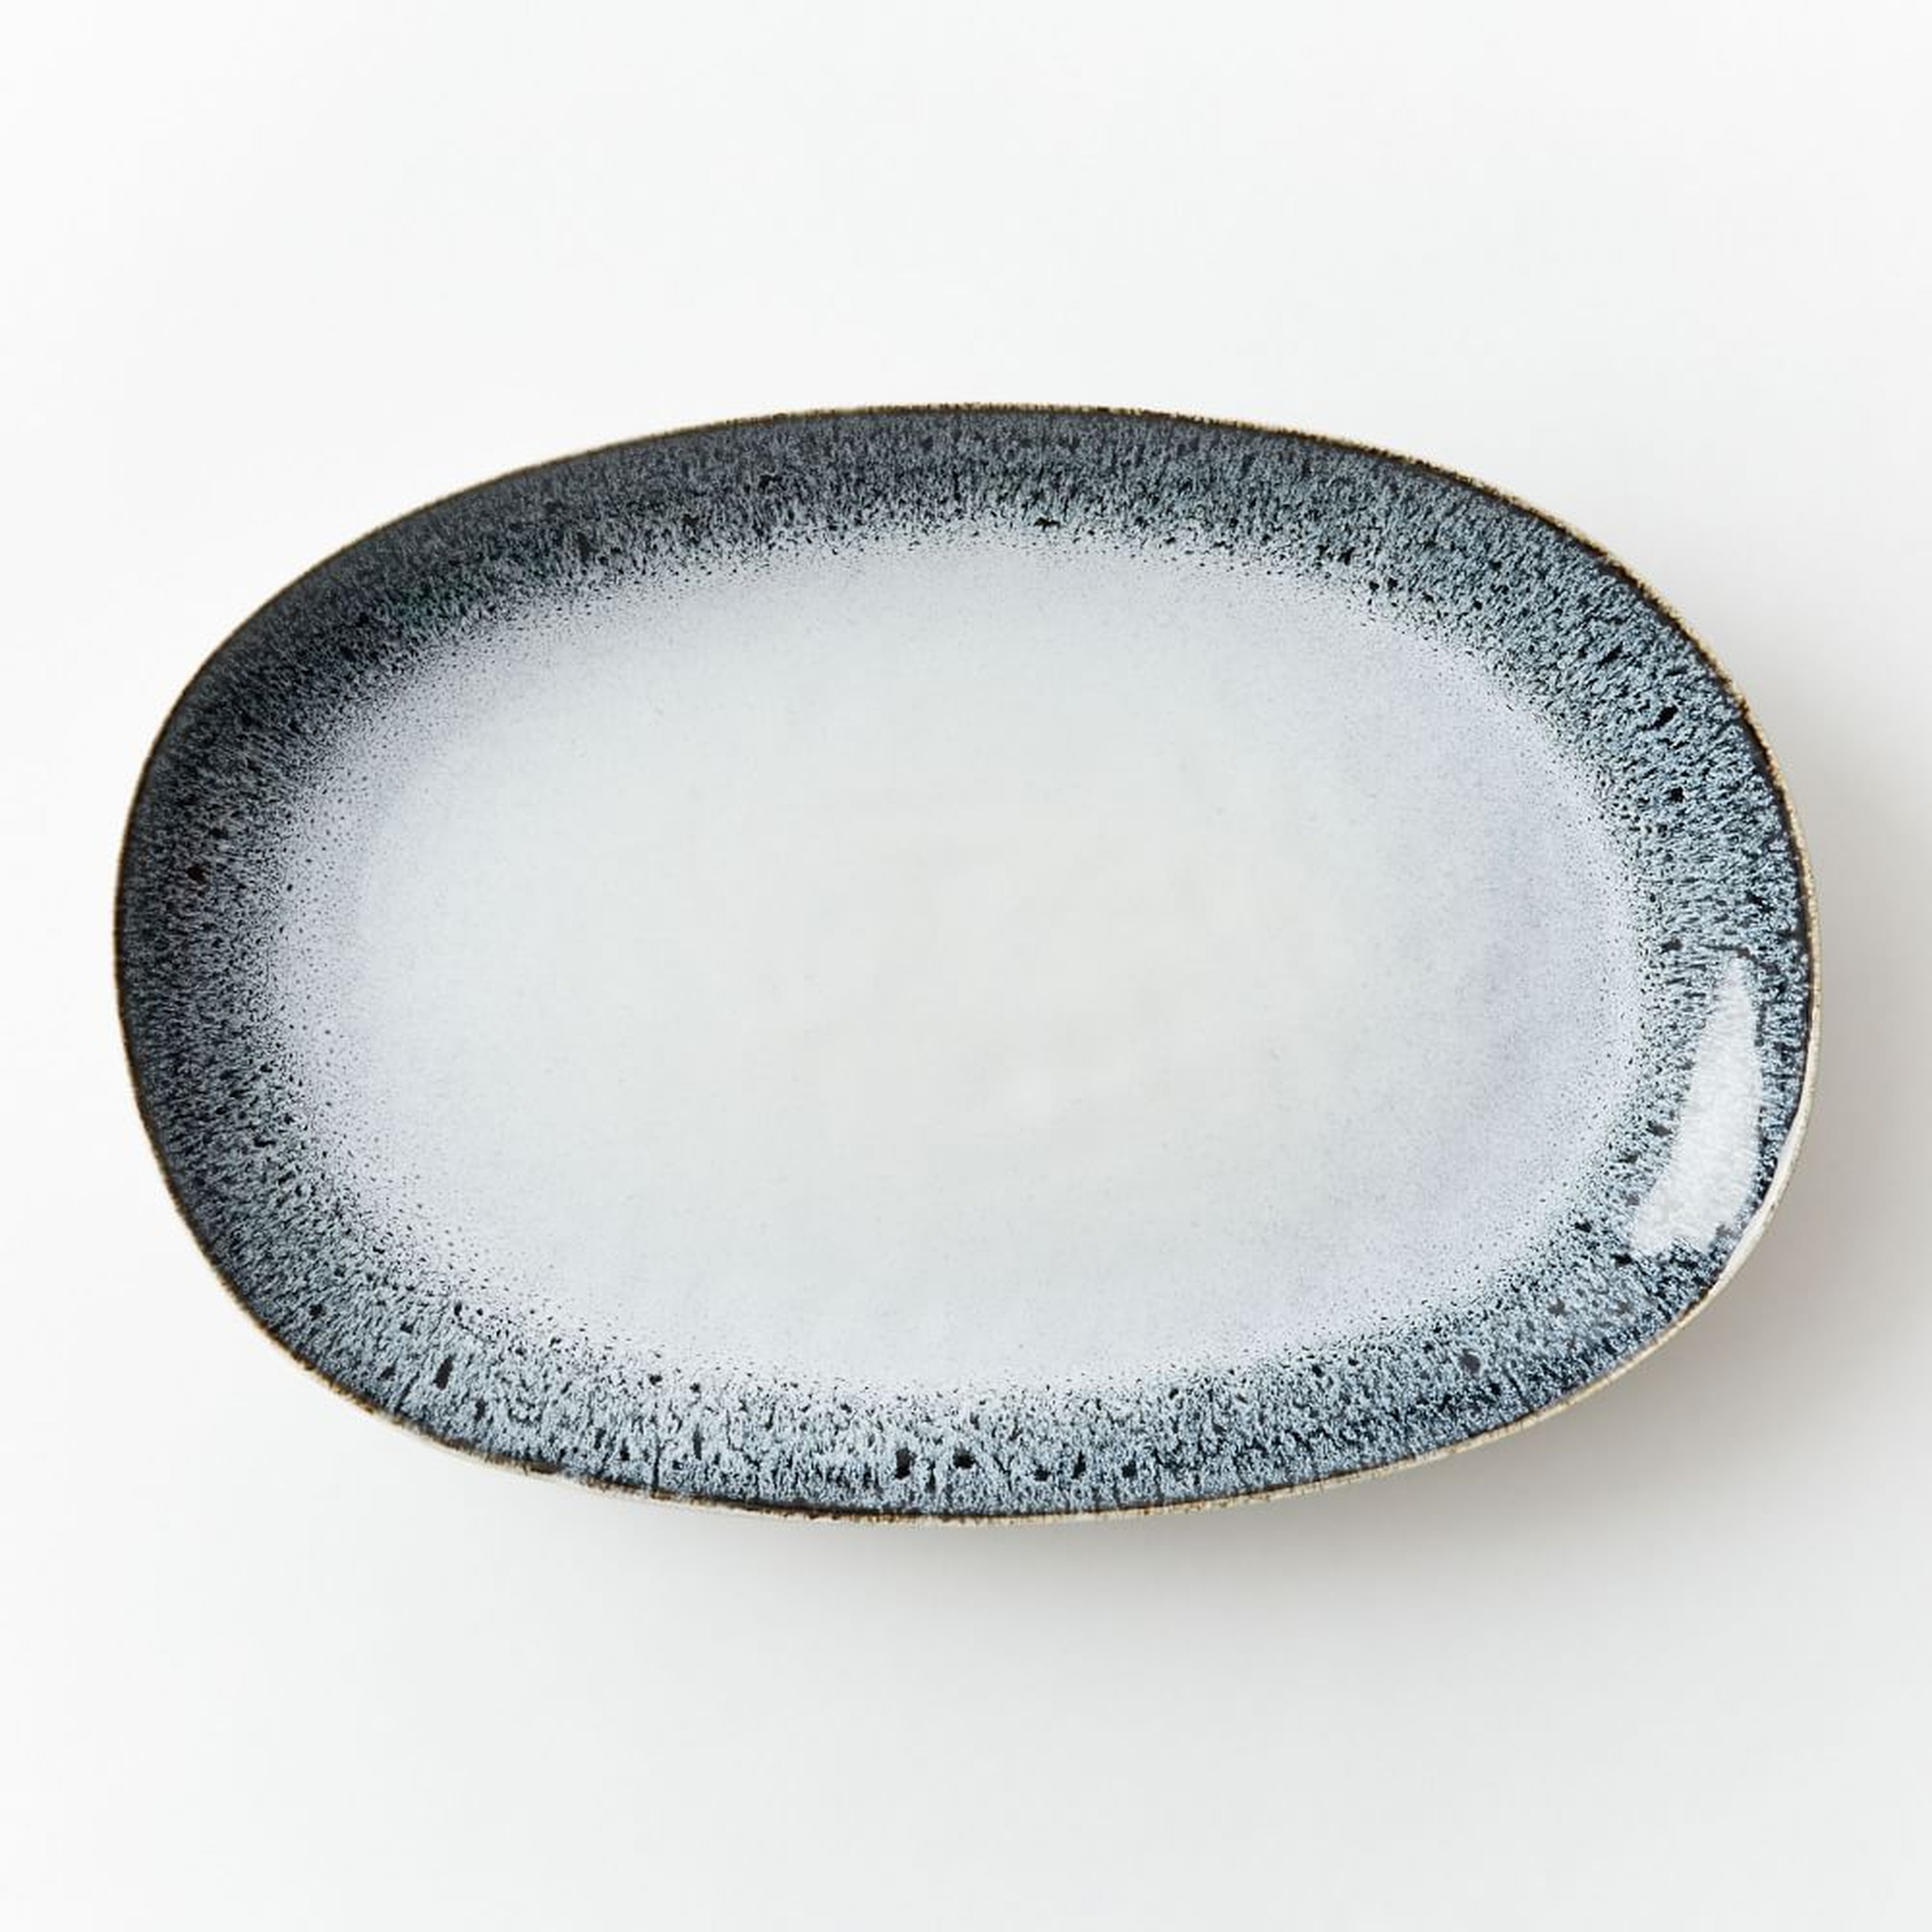 Reactive Glaze Large Oval Platter, Black + White - West Elm